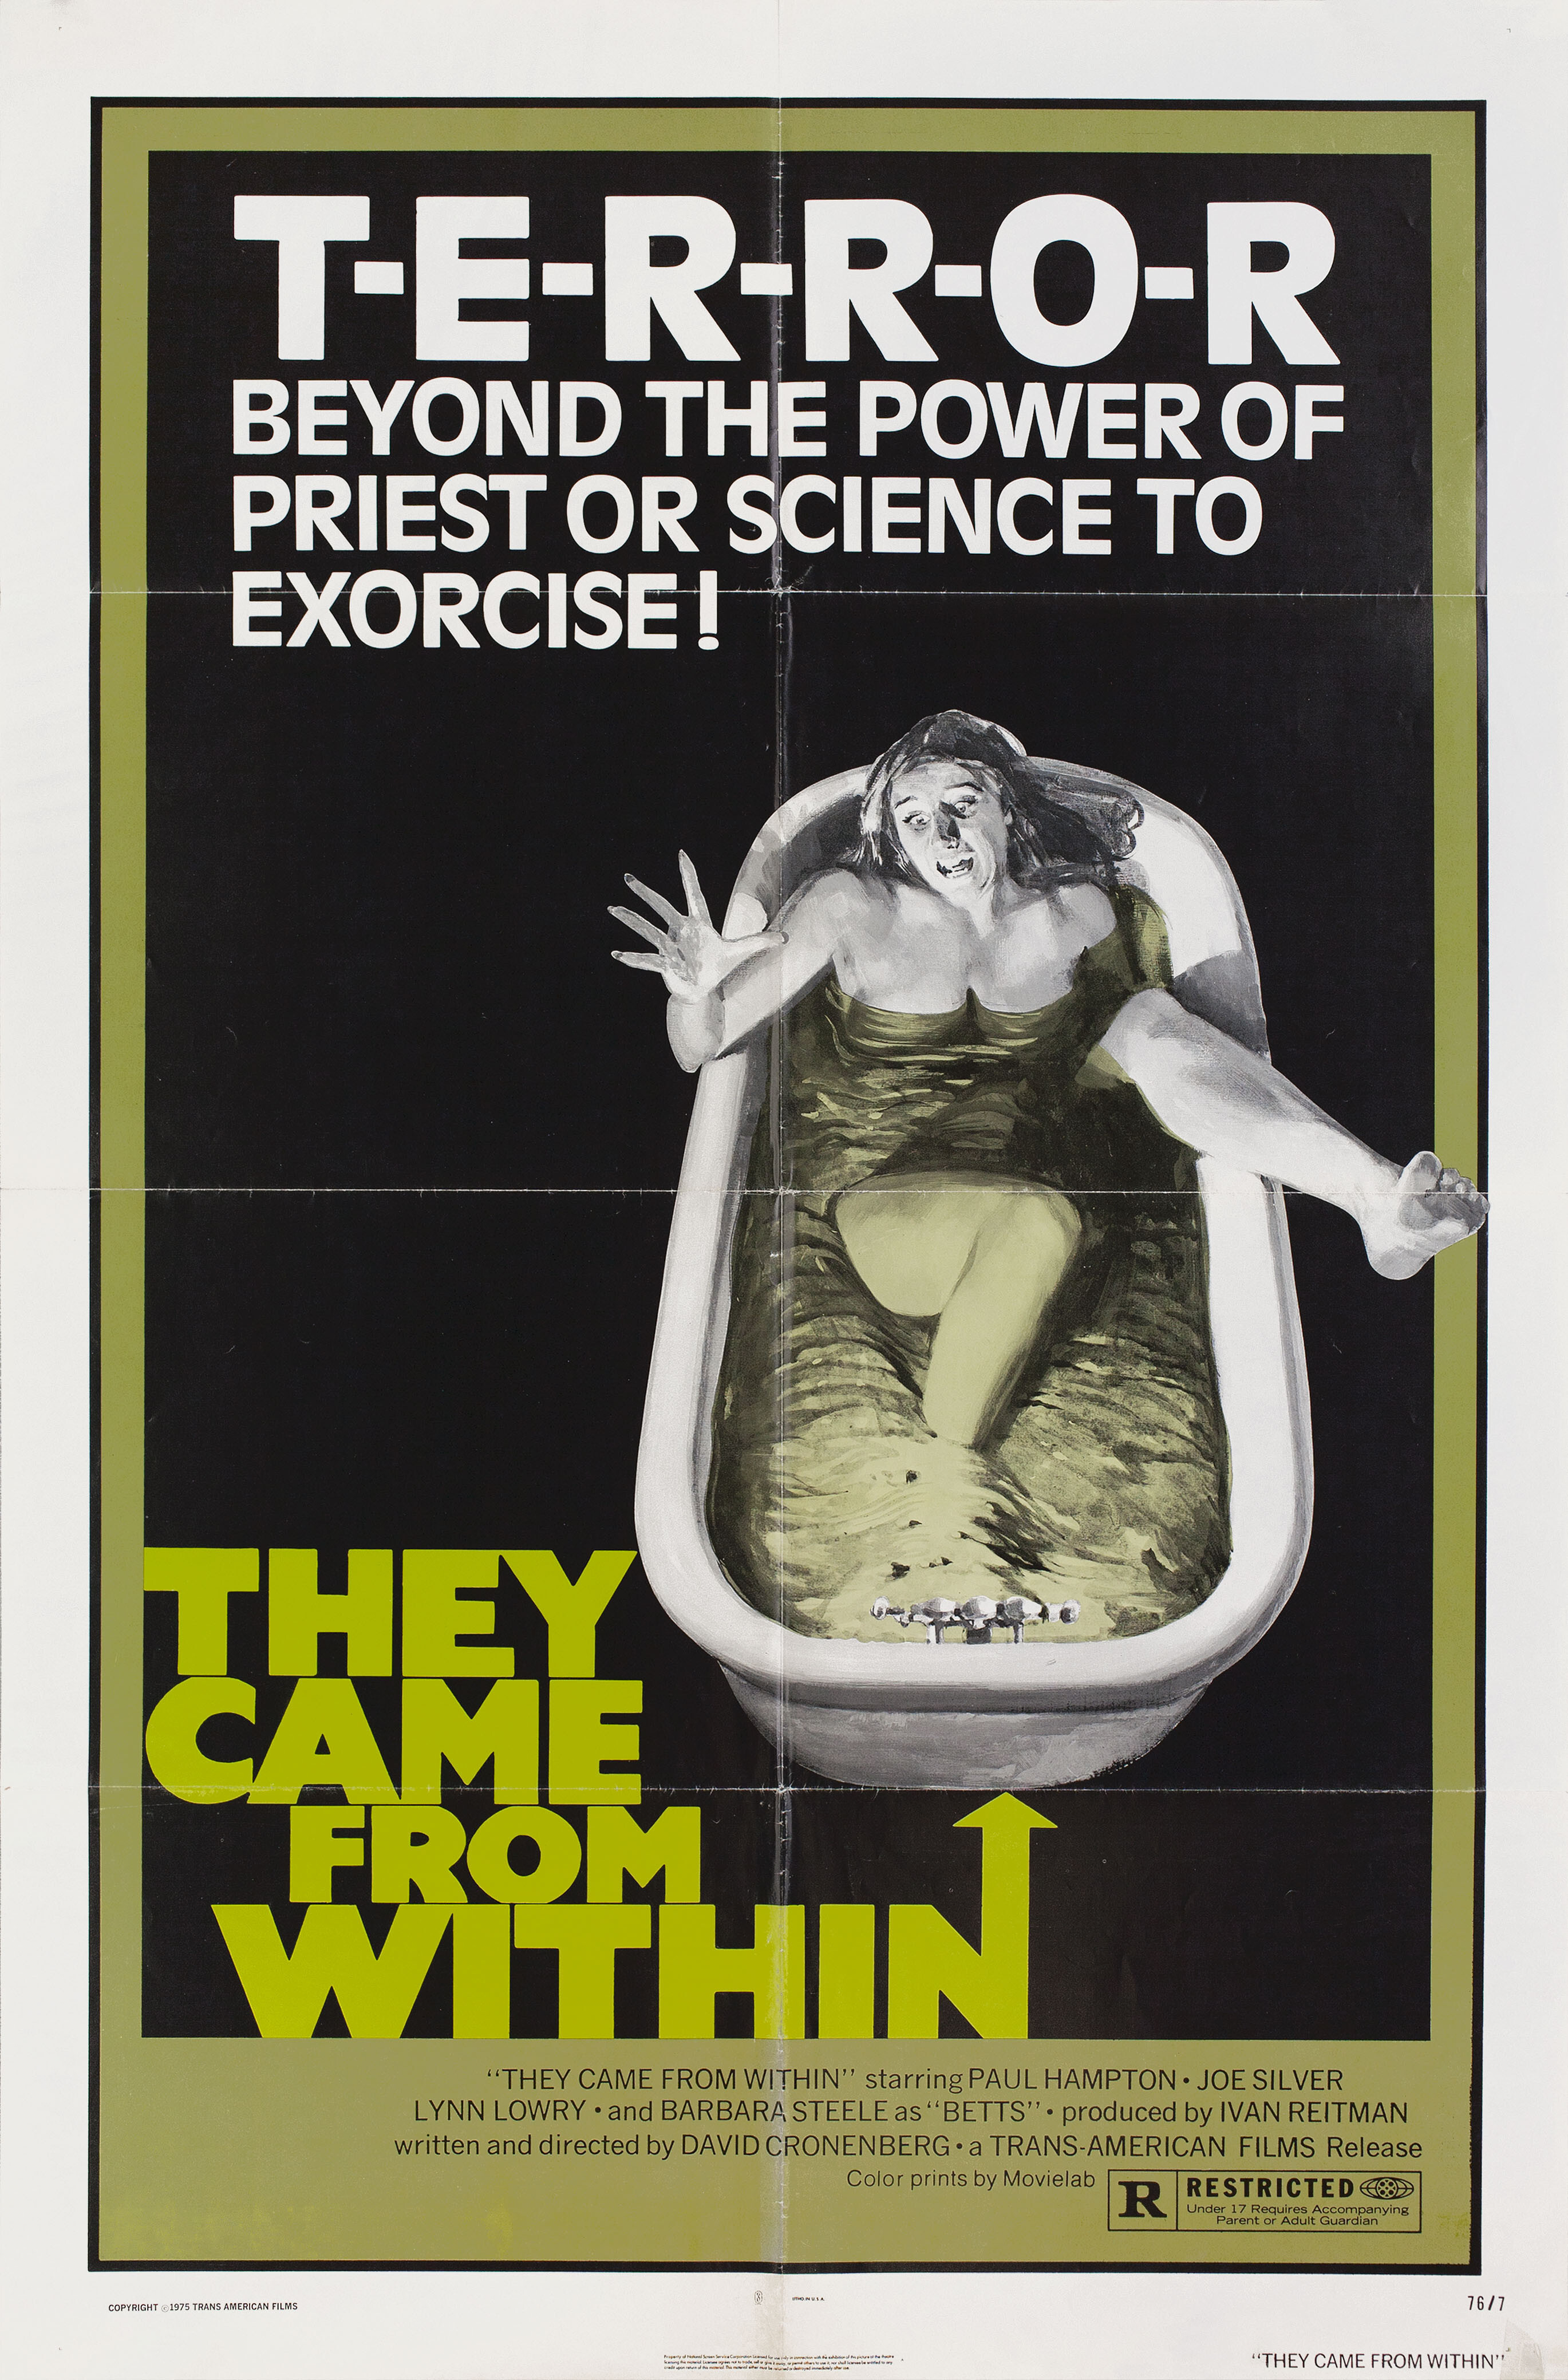 Судороги (They Came from Within, 1975), режиссёр Дэвид Кроненберг, американский постер к фильму (ужасы, 1976 год)